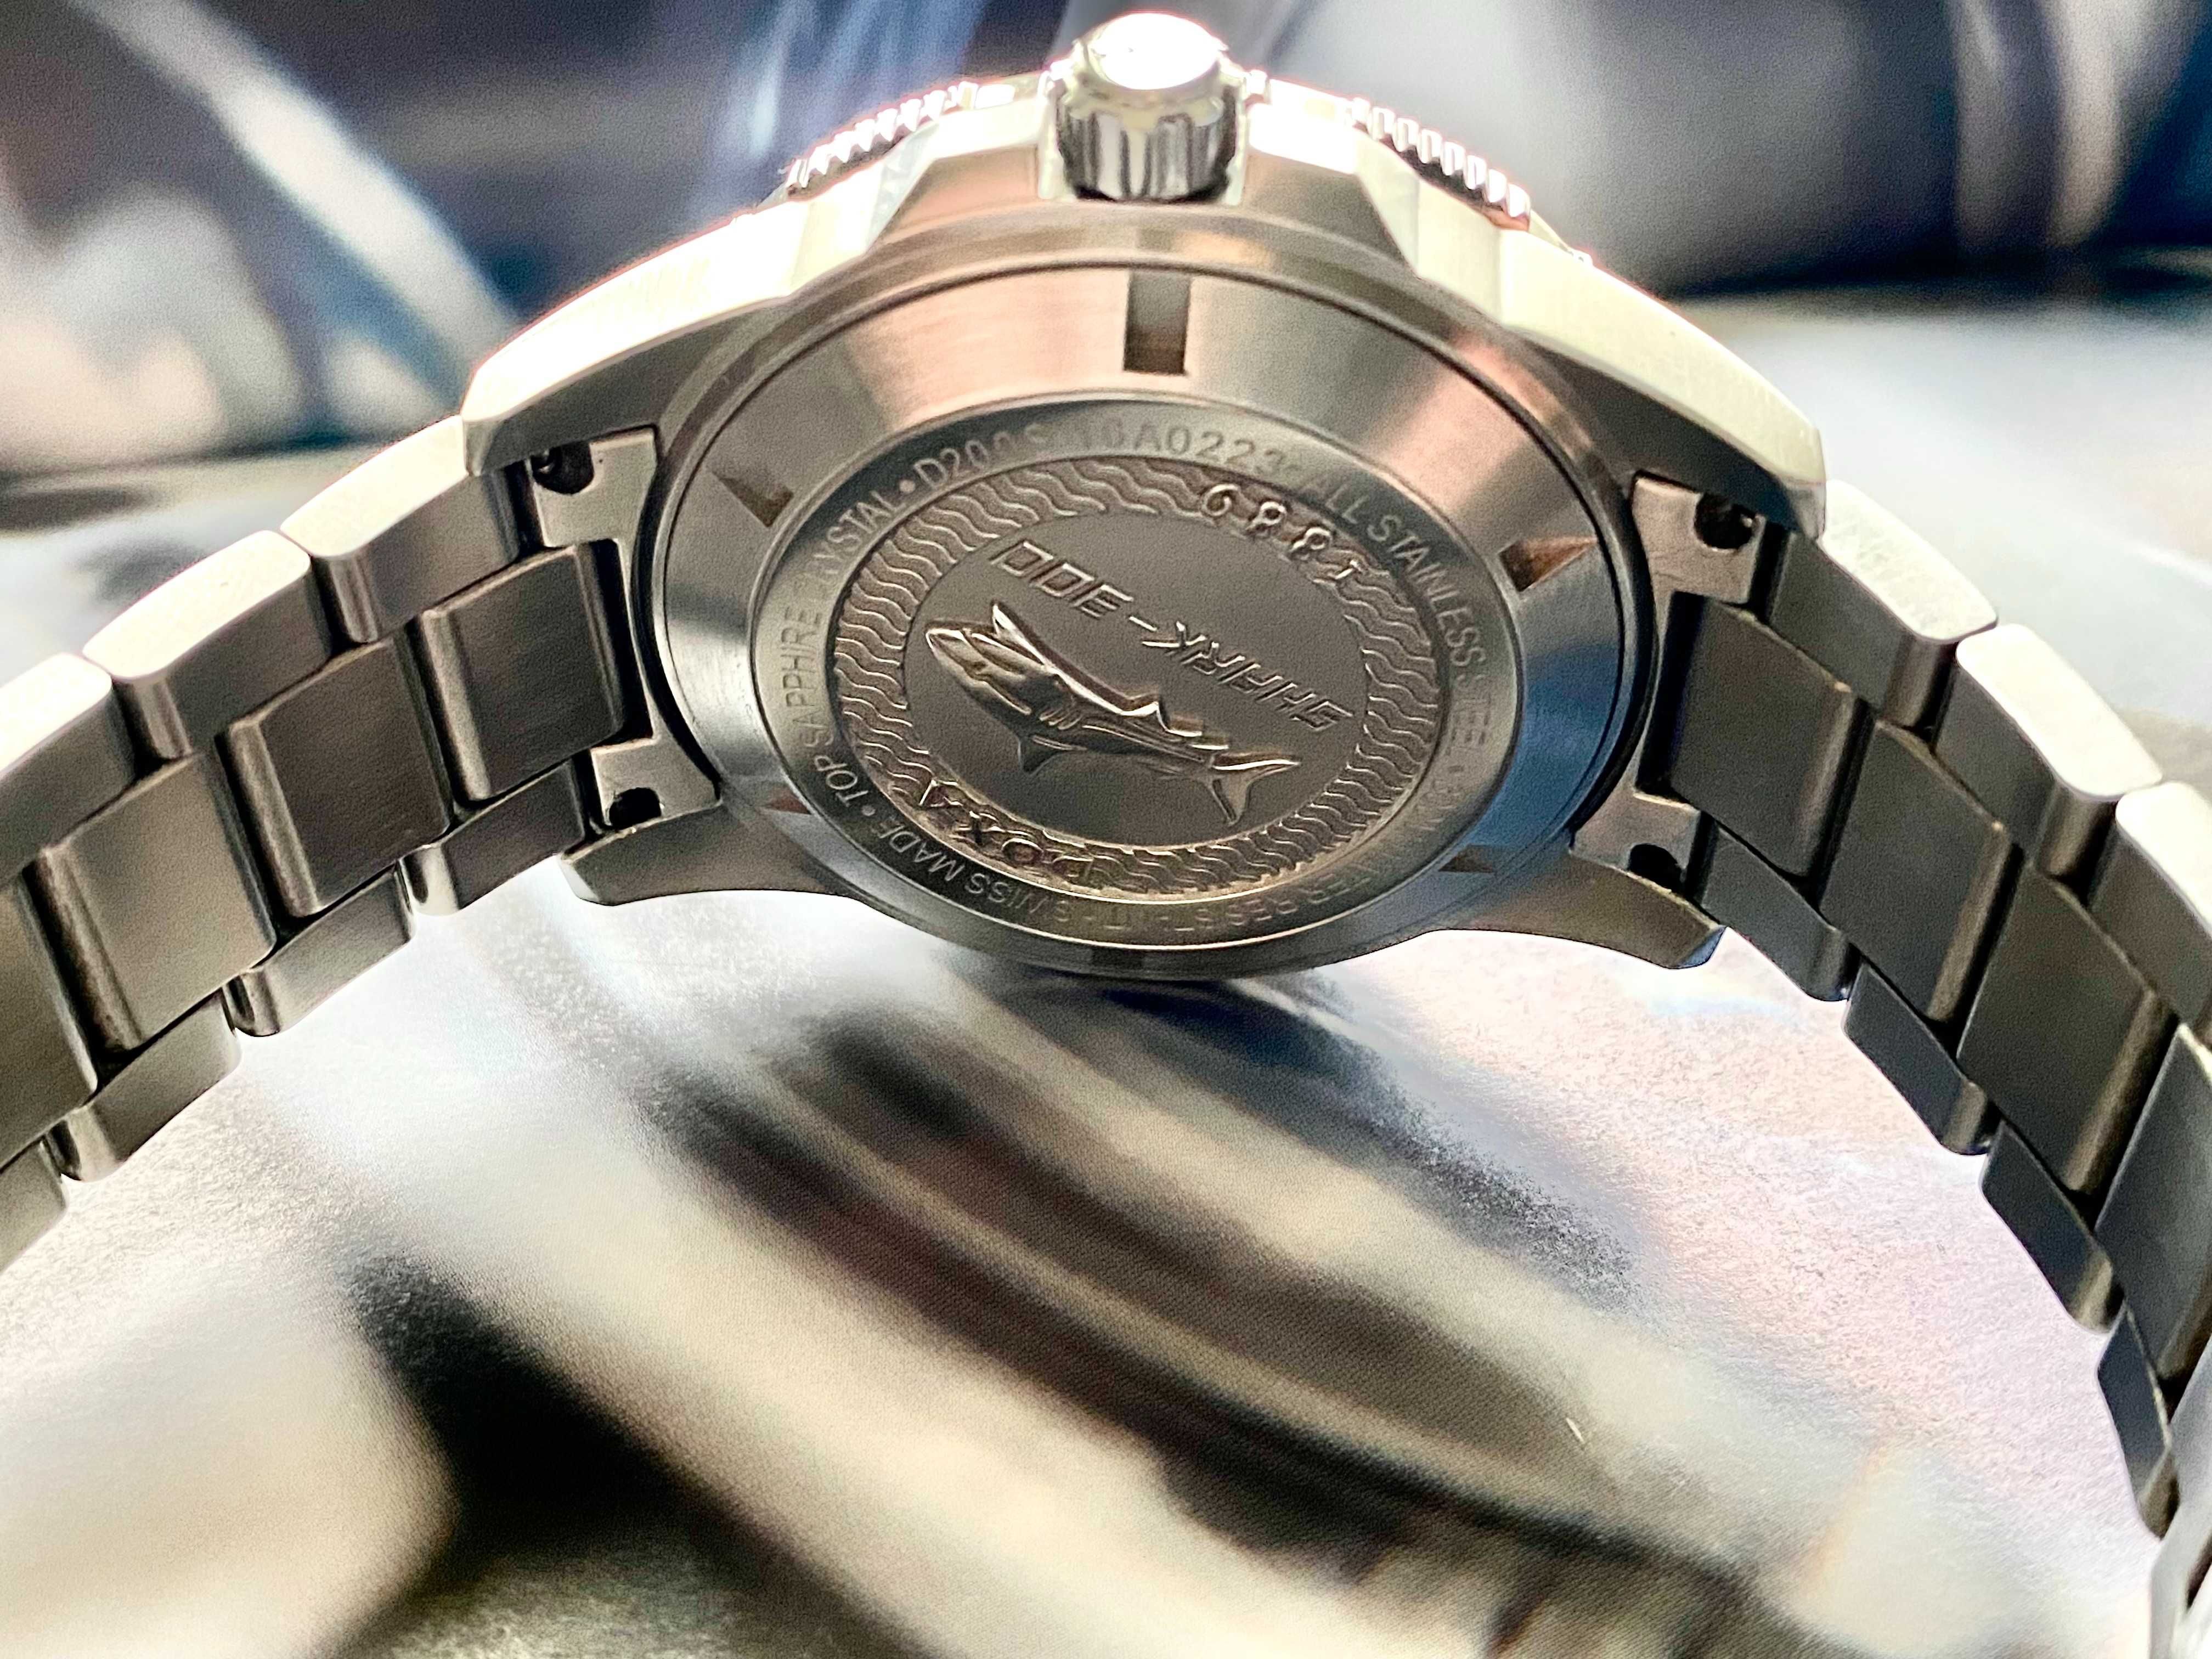 Rzadki i niedostepny zegarek: Doxa Shark 300L D200SBU